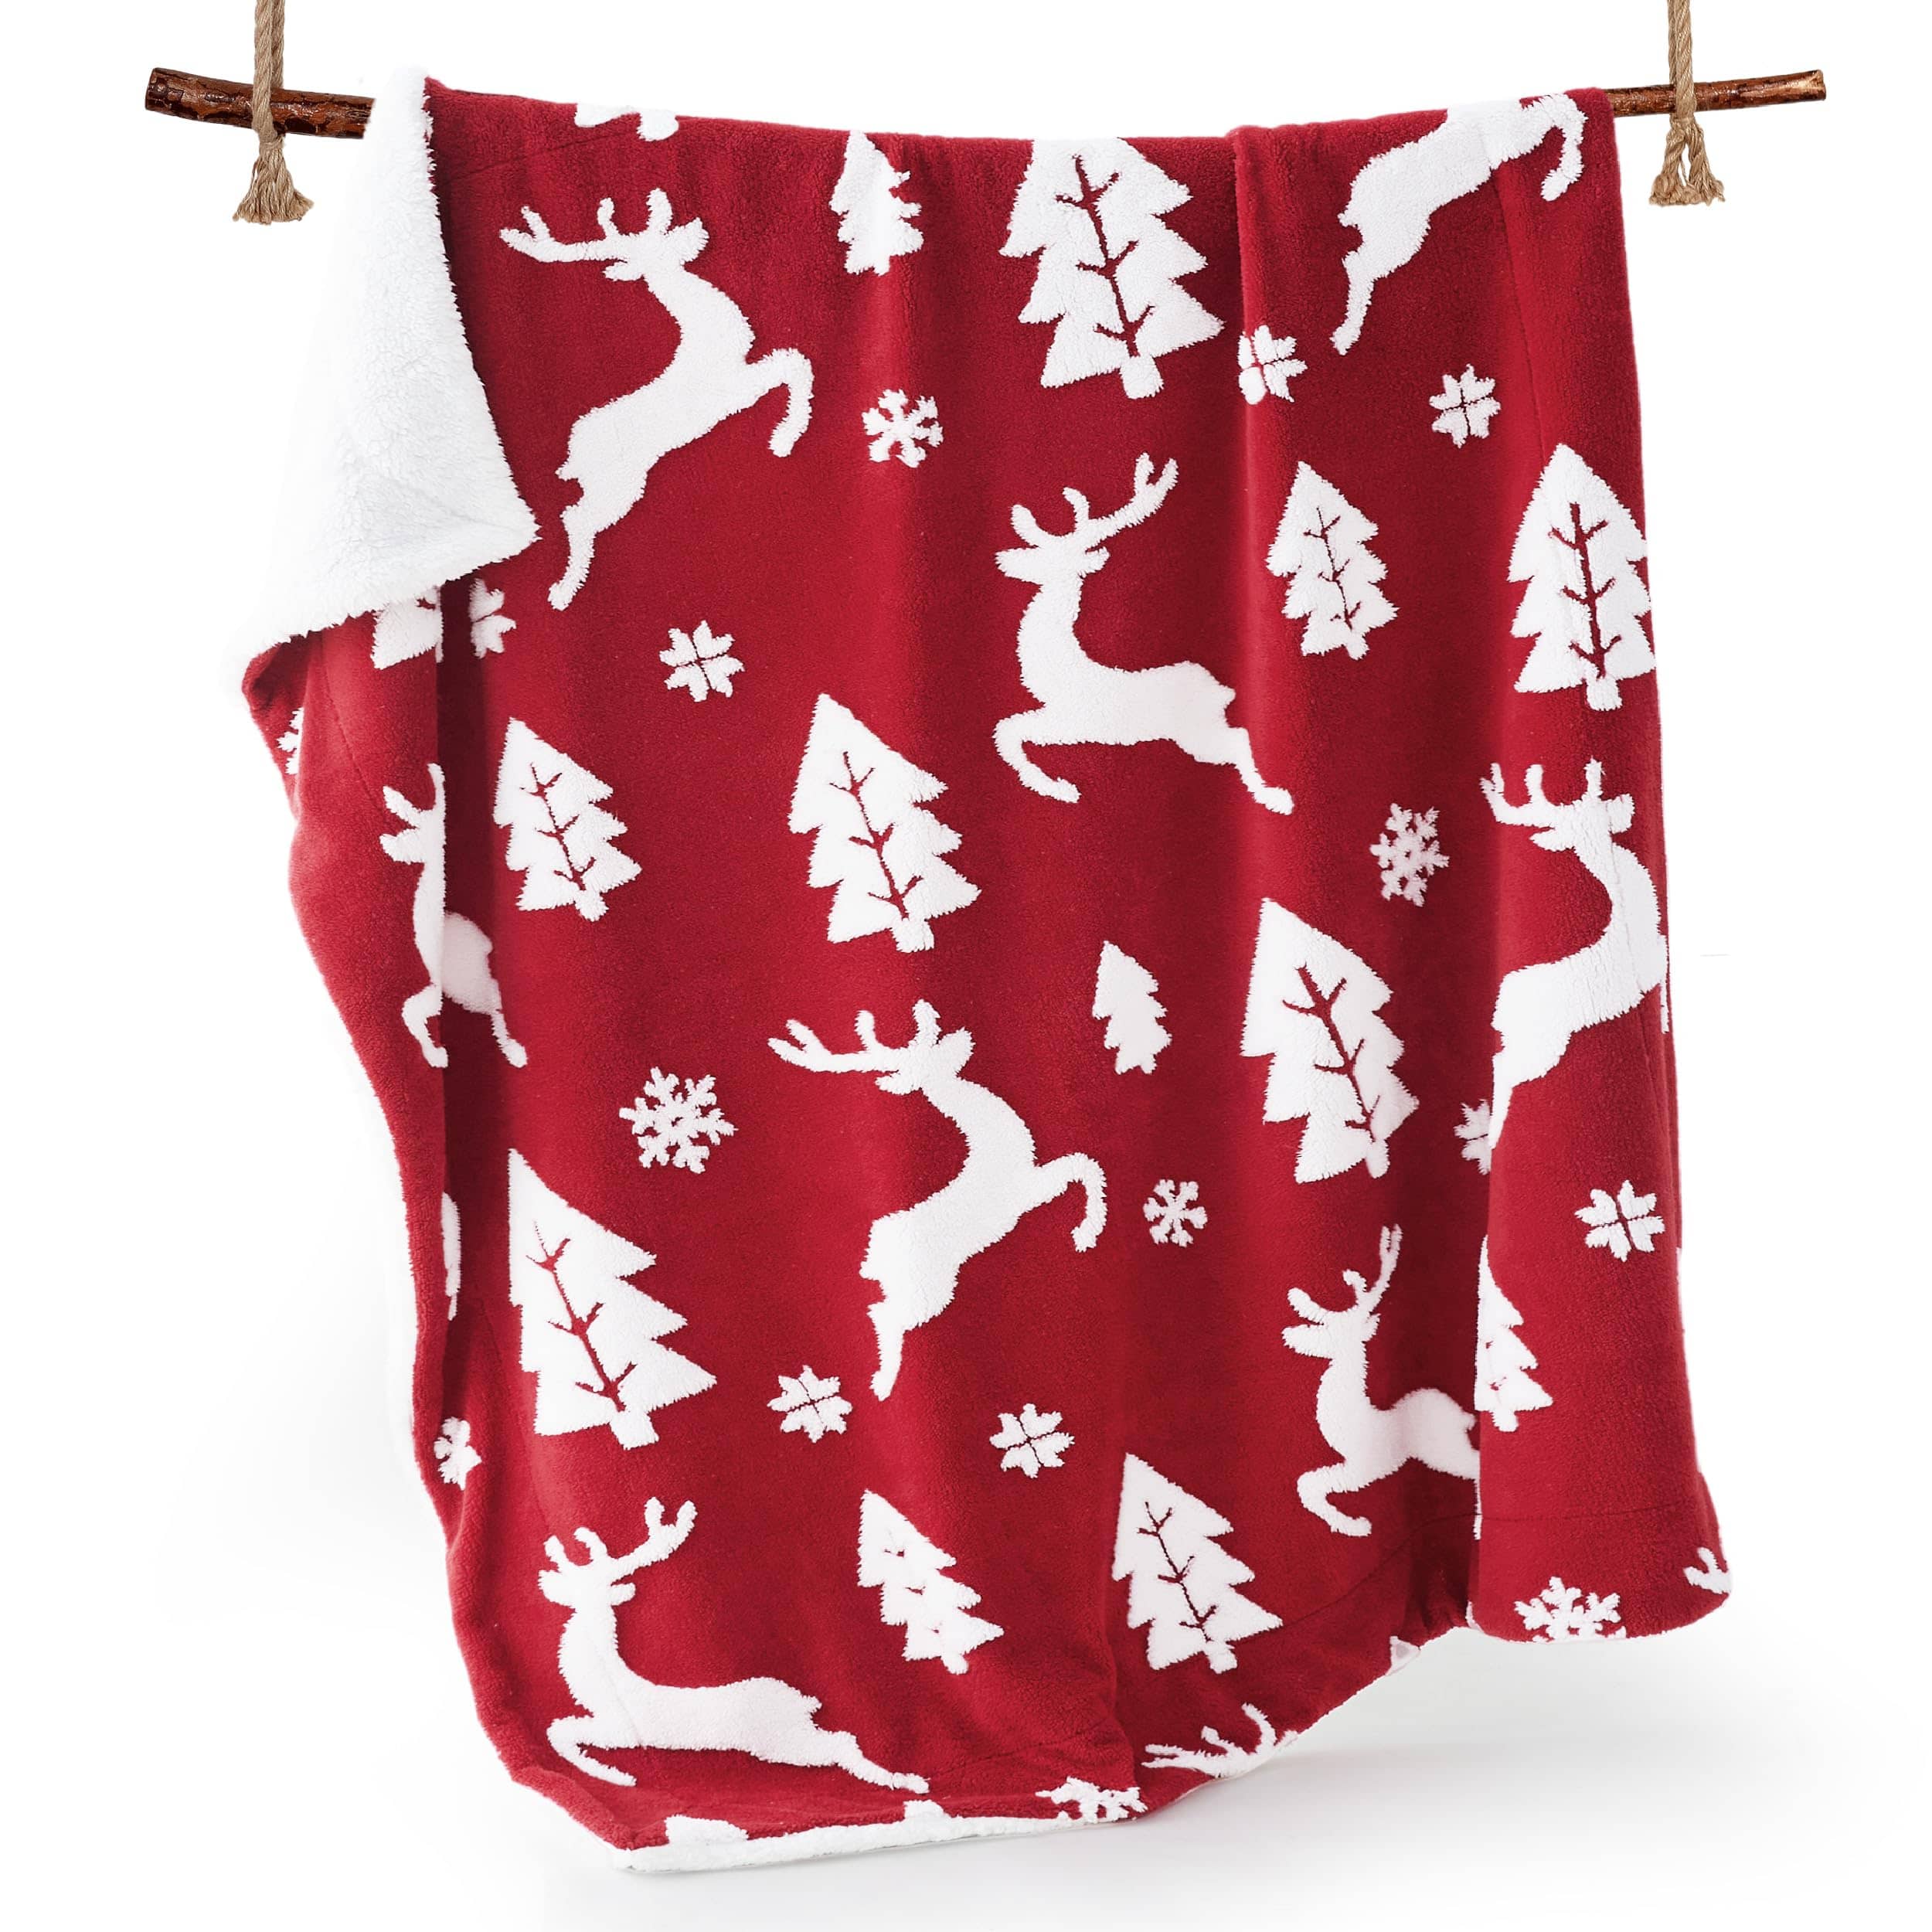 Bedsure Christmas Elk Red Sherpa Throw Blanket